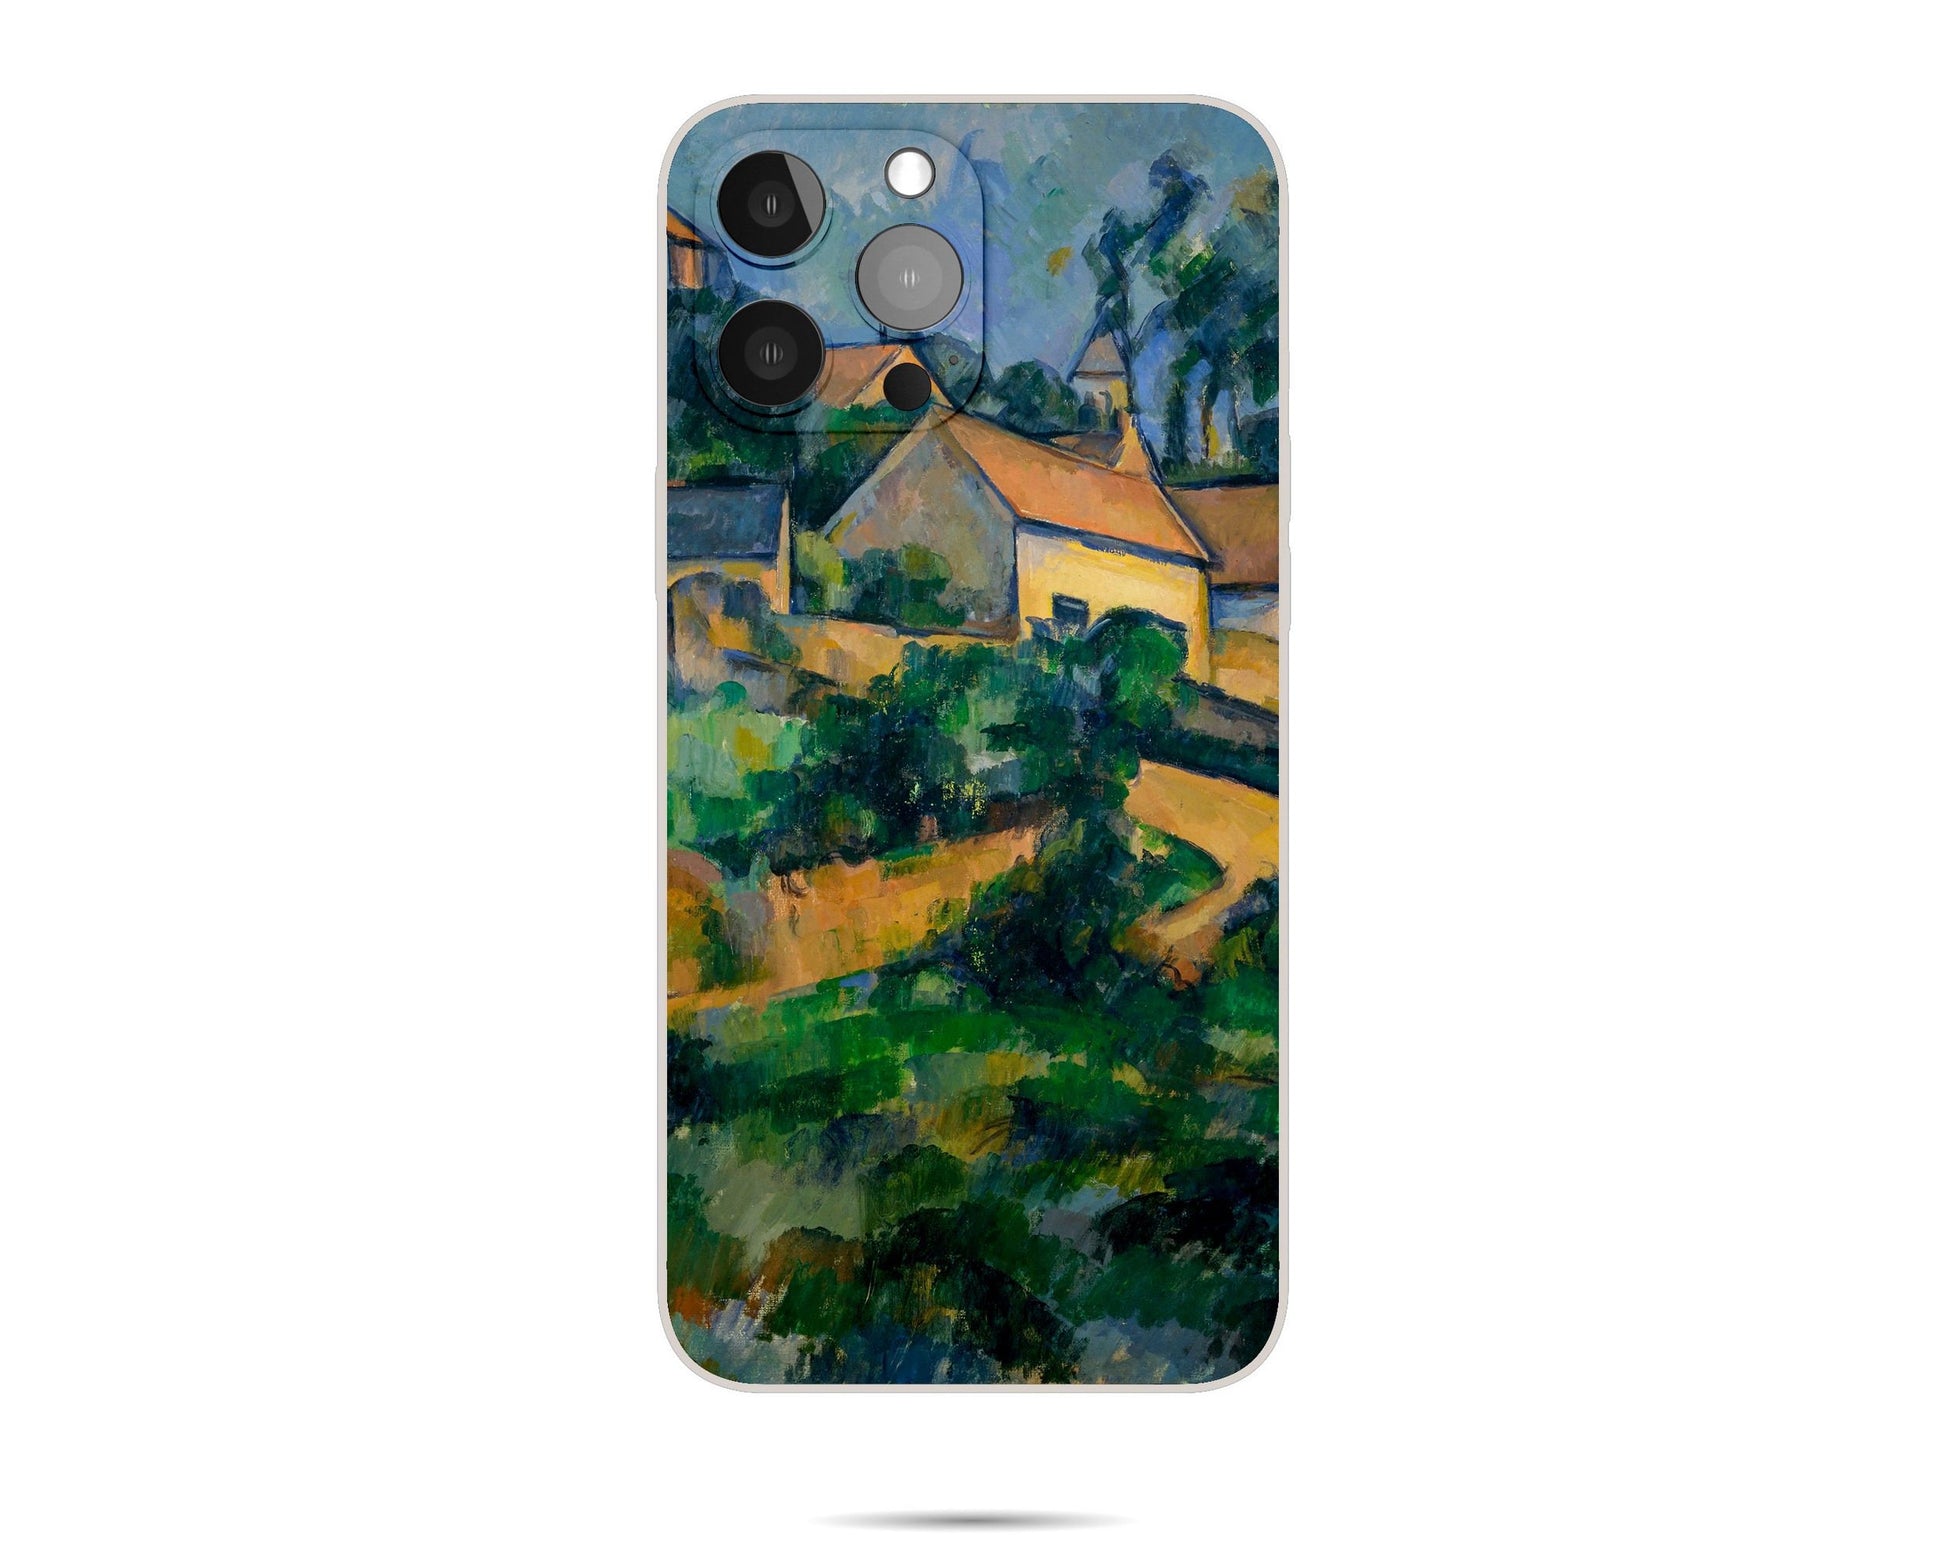 Iphone Case Of Paul Cézanne Famous Landscape Painting,Iphone Xr, Designer Iphone 8 Plus Case, Iphone Protective Case, Iphone Case Silicone